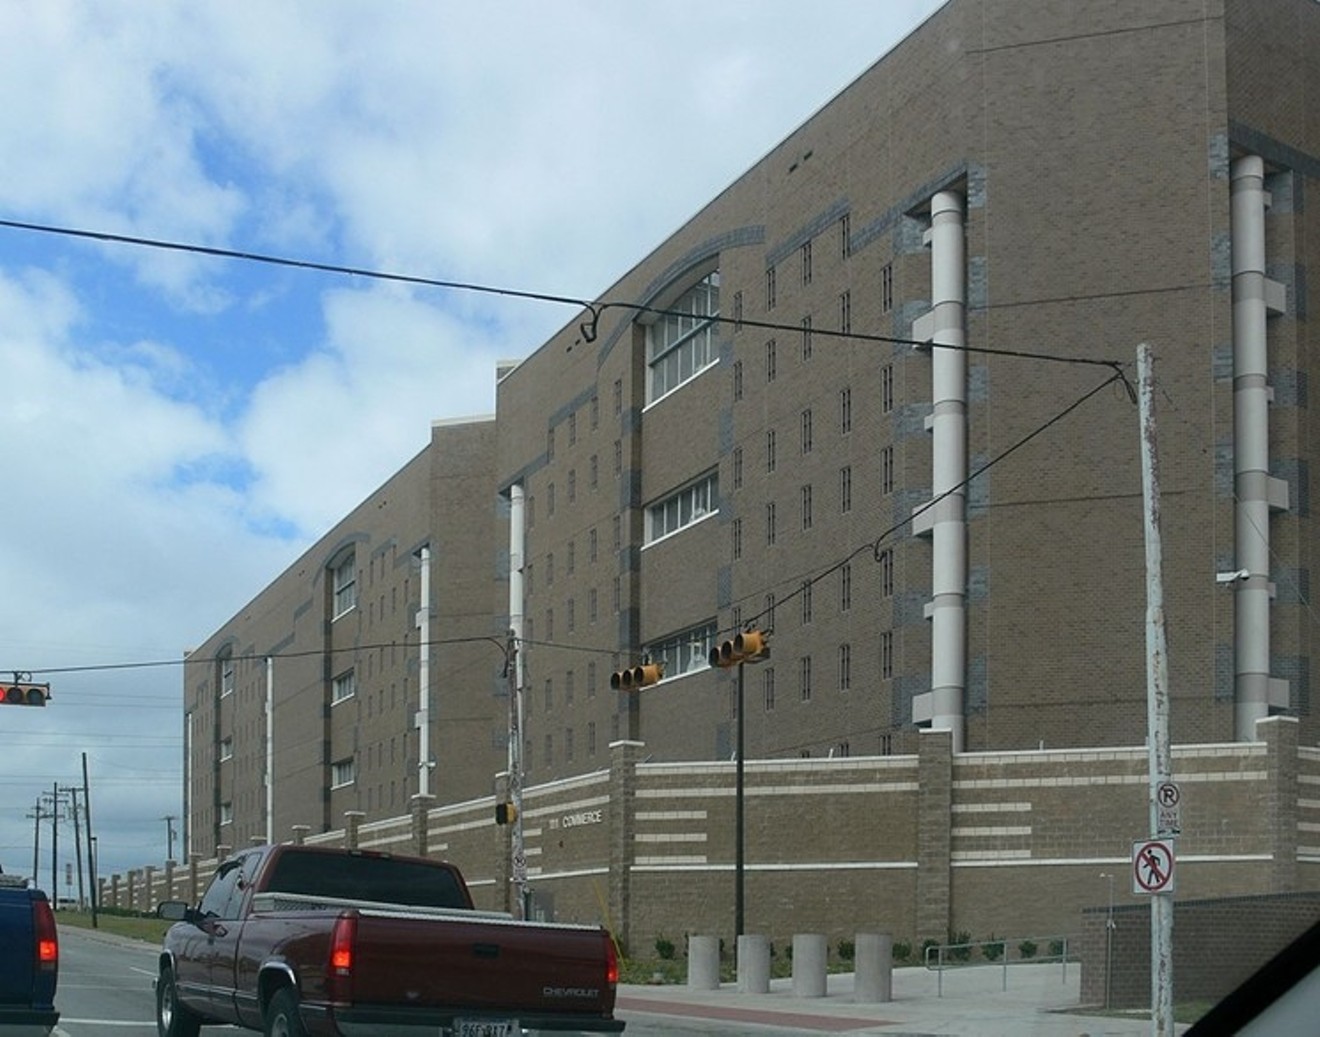 Dallas County's Lew Sterrett Justice Center. Close quarters and little social distance.